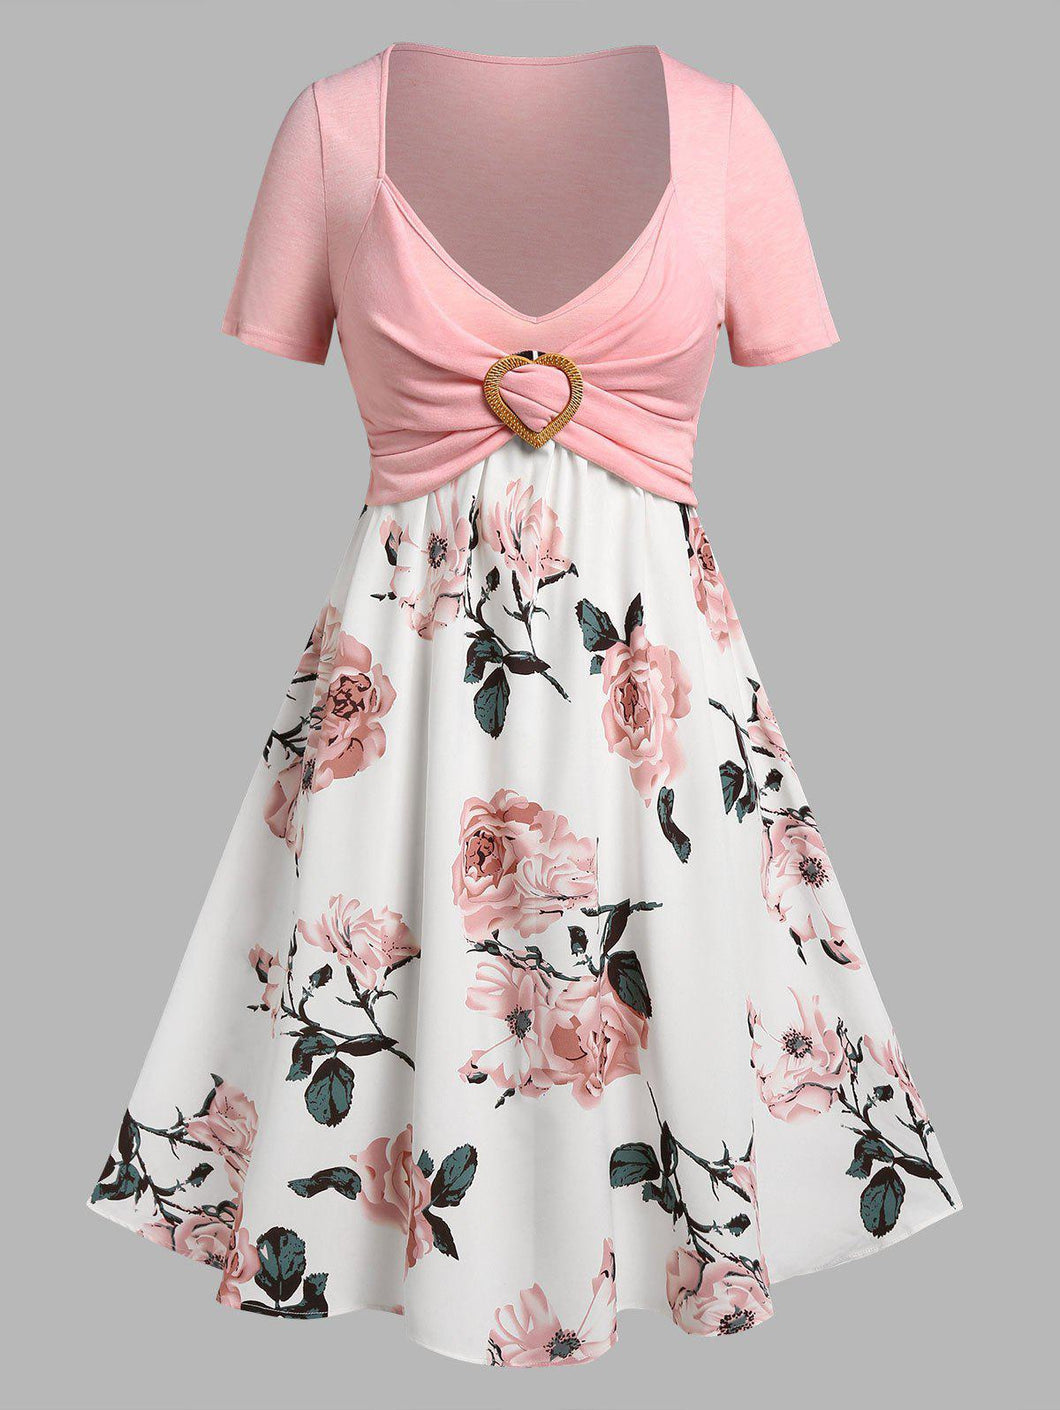 Rosegal floral print crossover twofer cottagecore dress